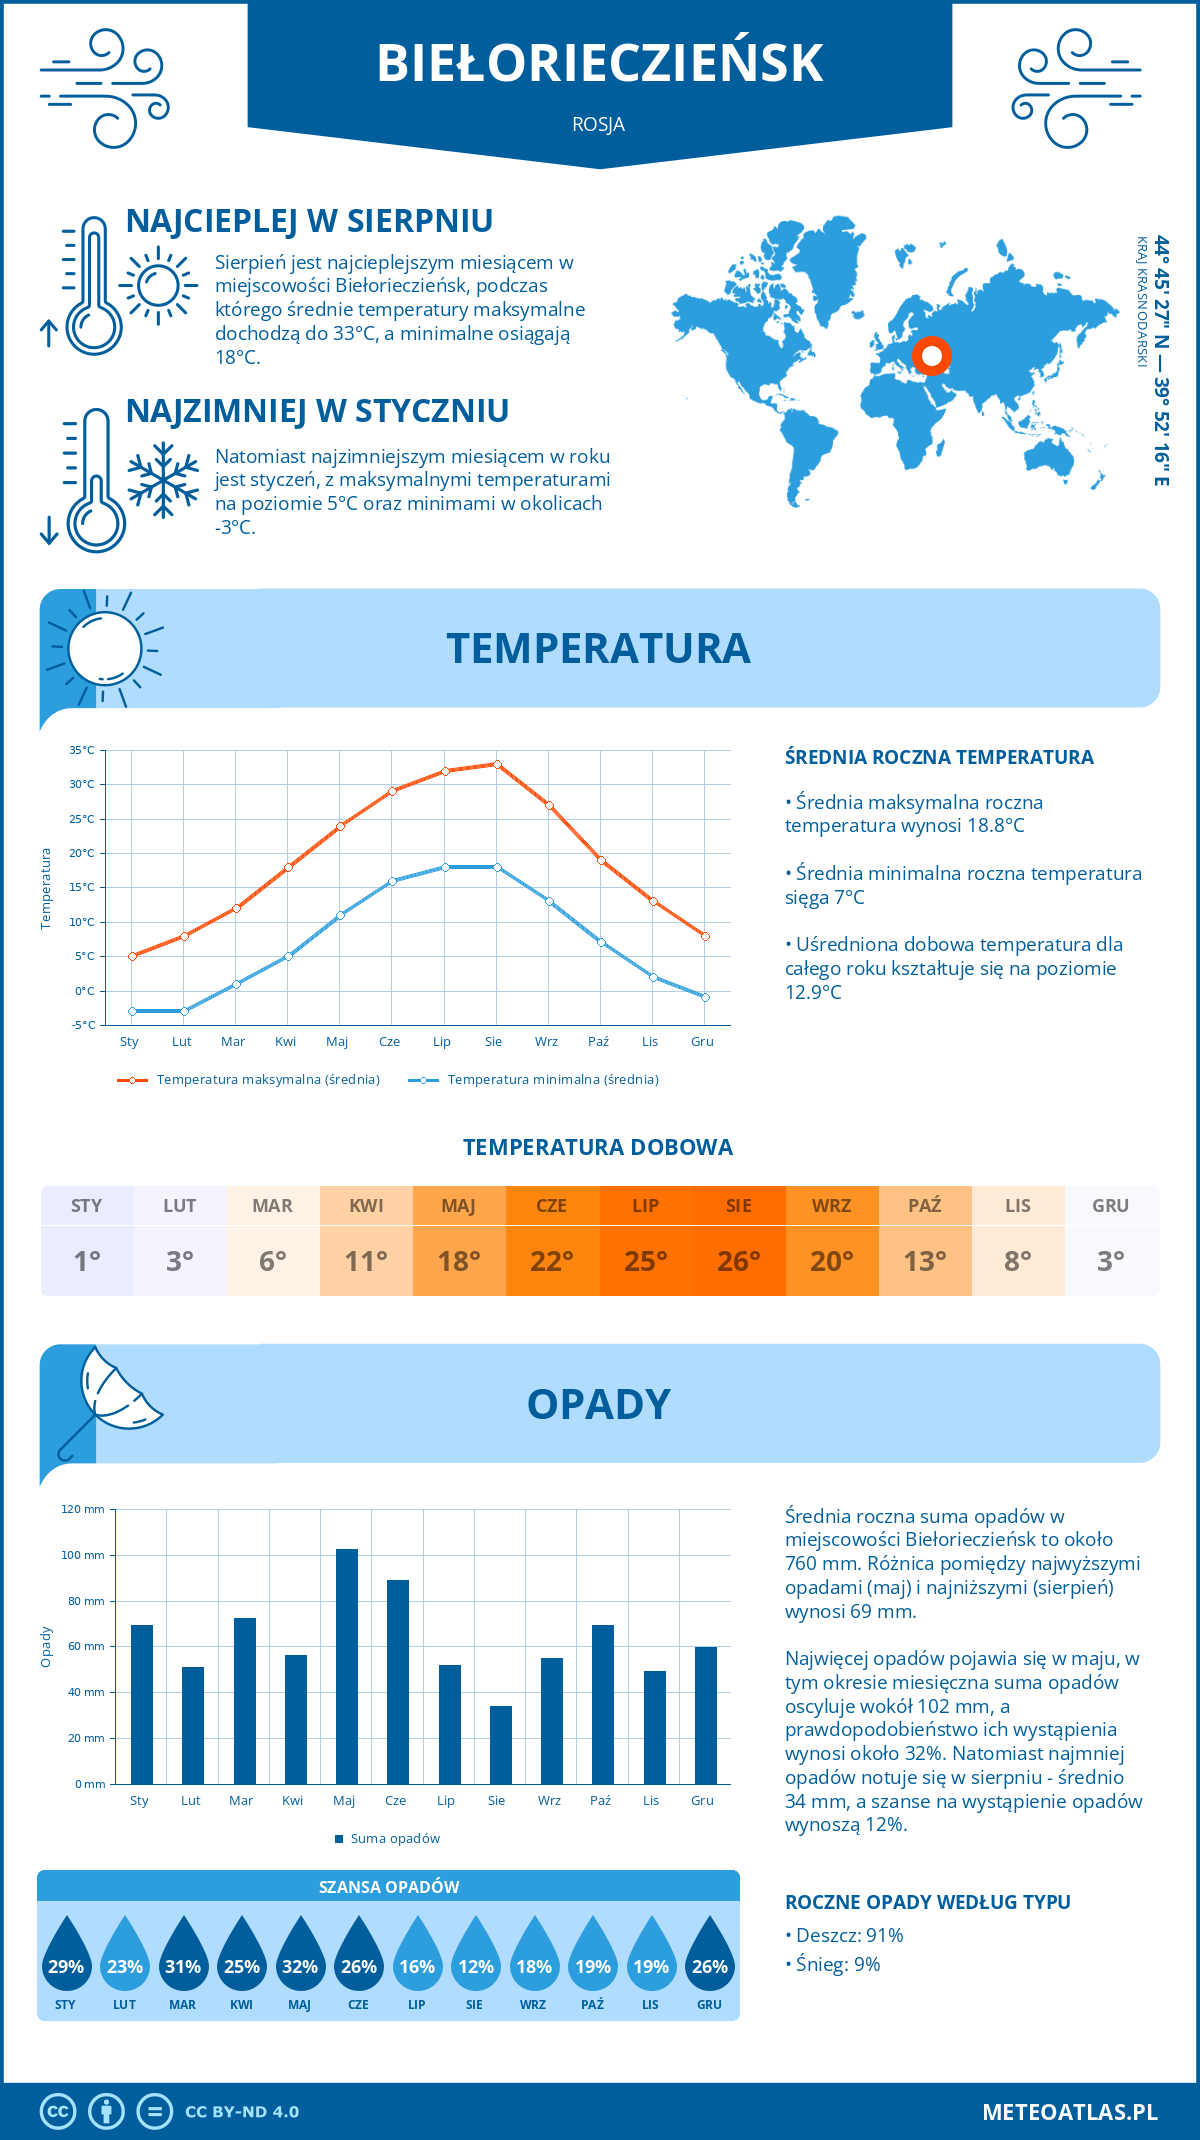 Pogoda Biełorieczieńsk (Rosja). Temperatura oraz opady.